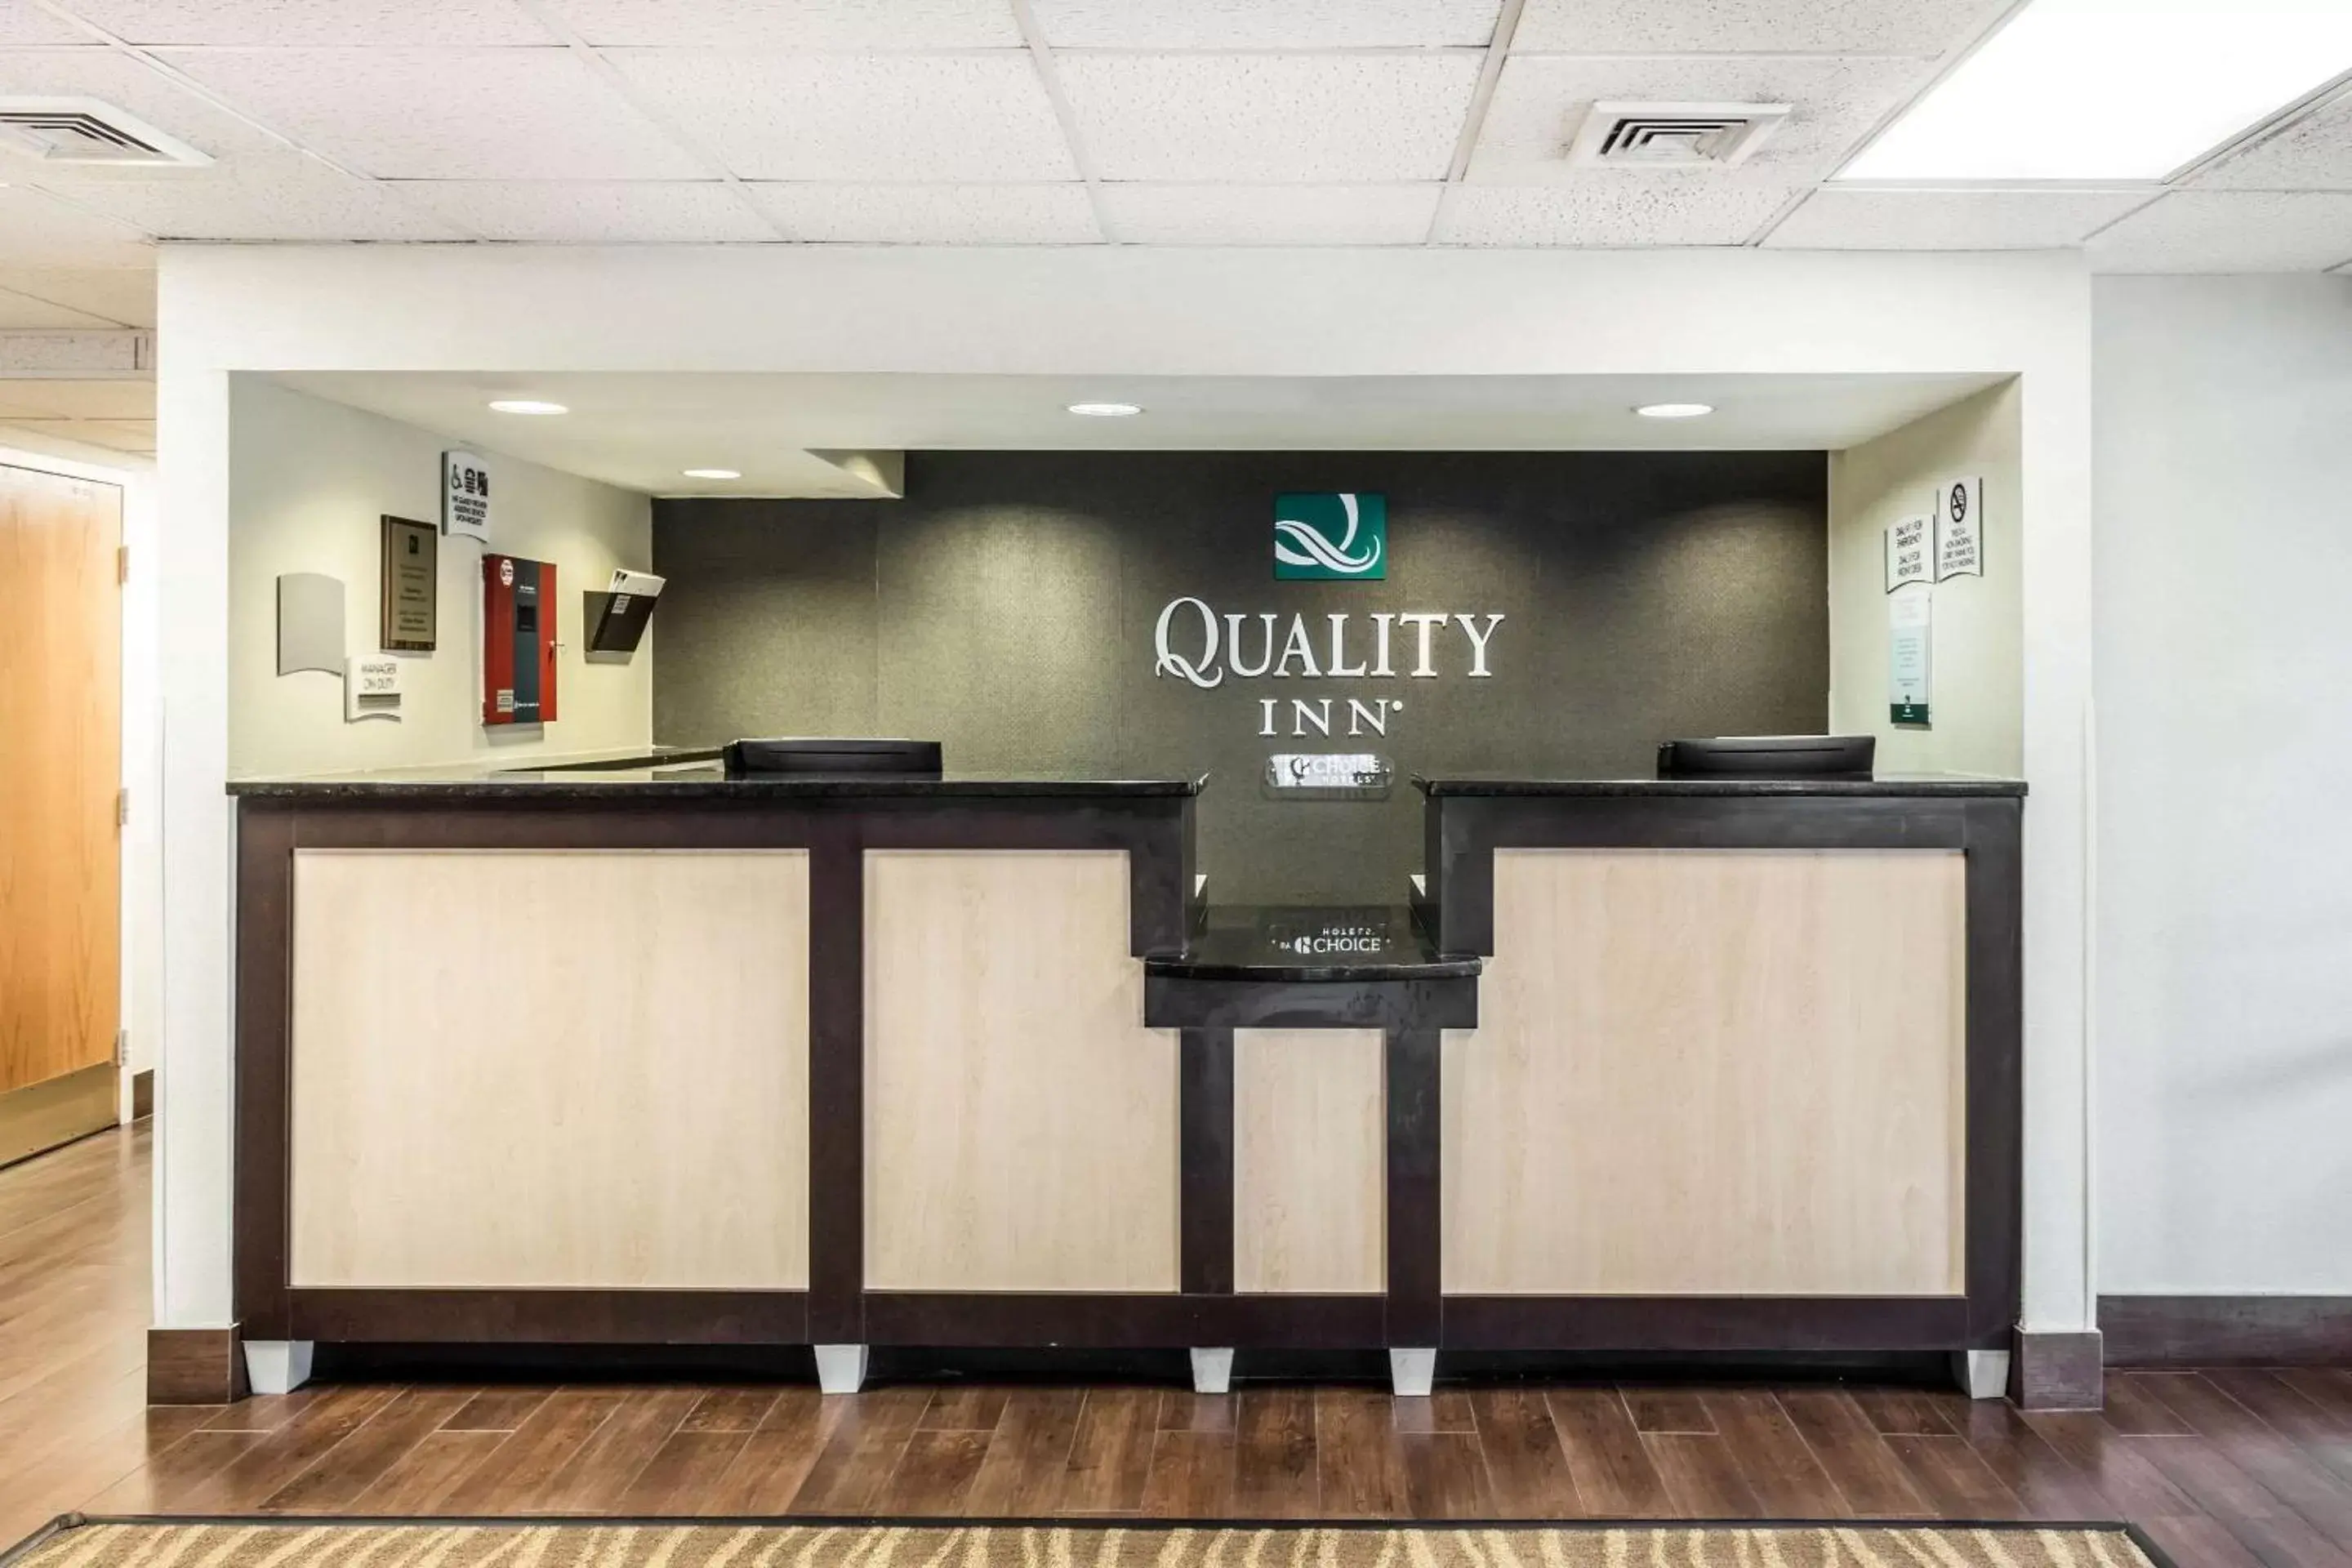 Lobby or reception, Lobby/Reception in Quality Inn Walterboro